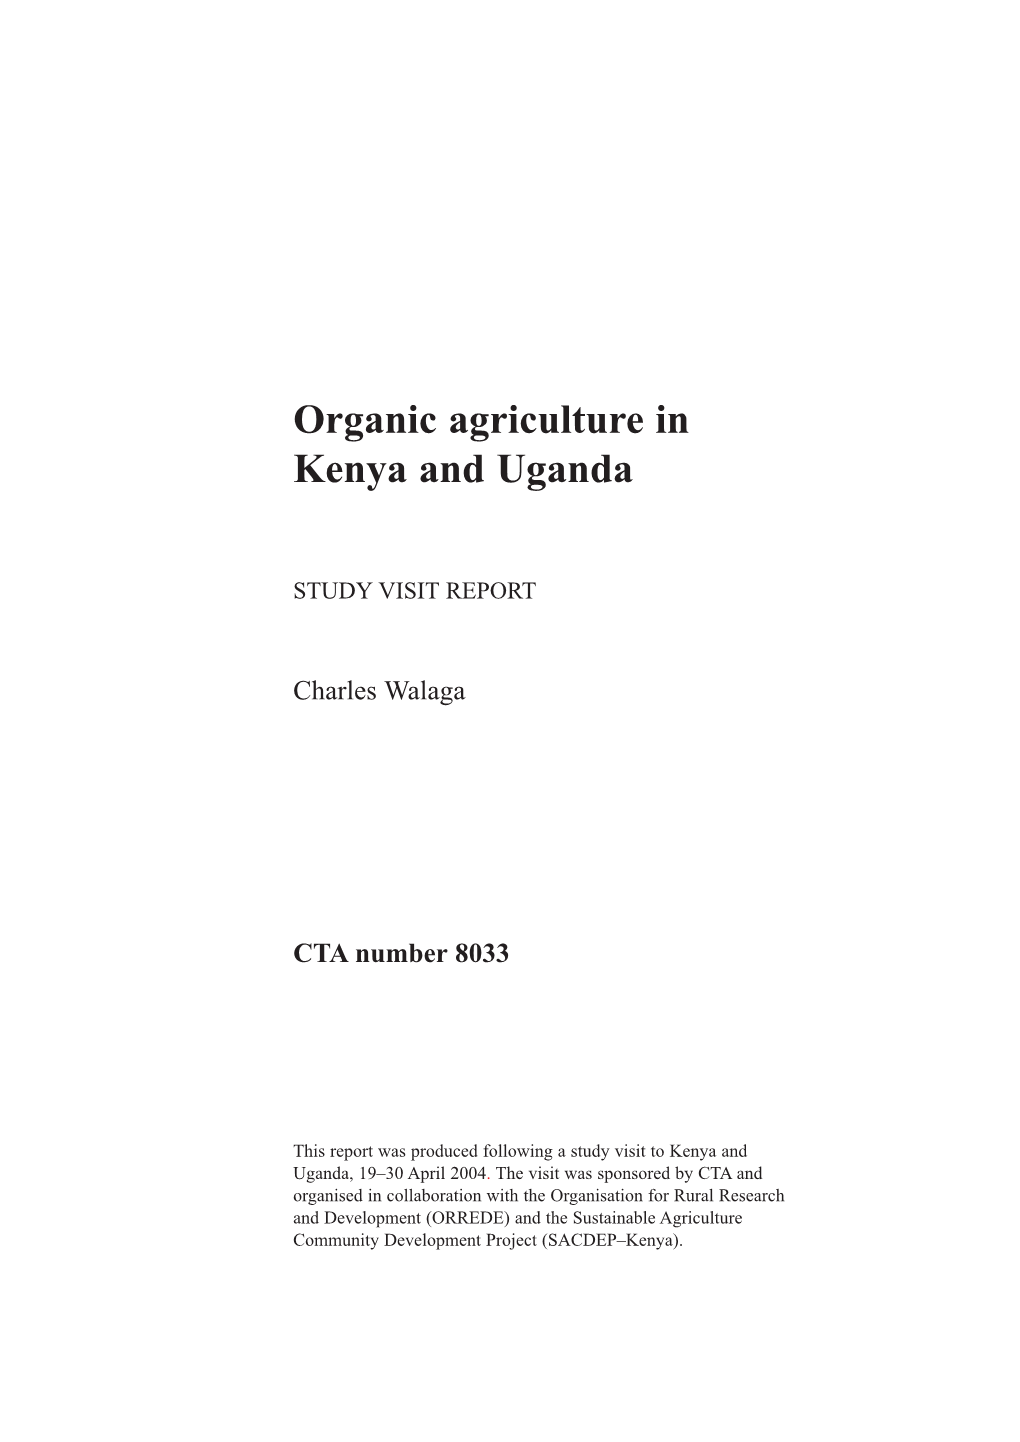 Organic Agriculture in Kenya and Uganda